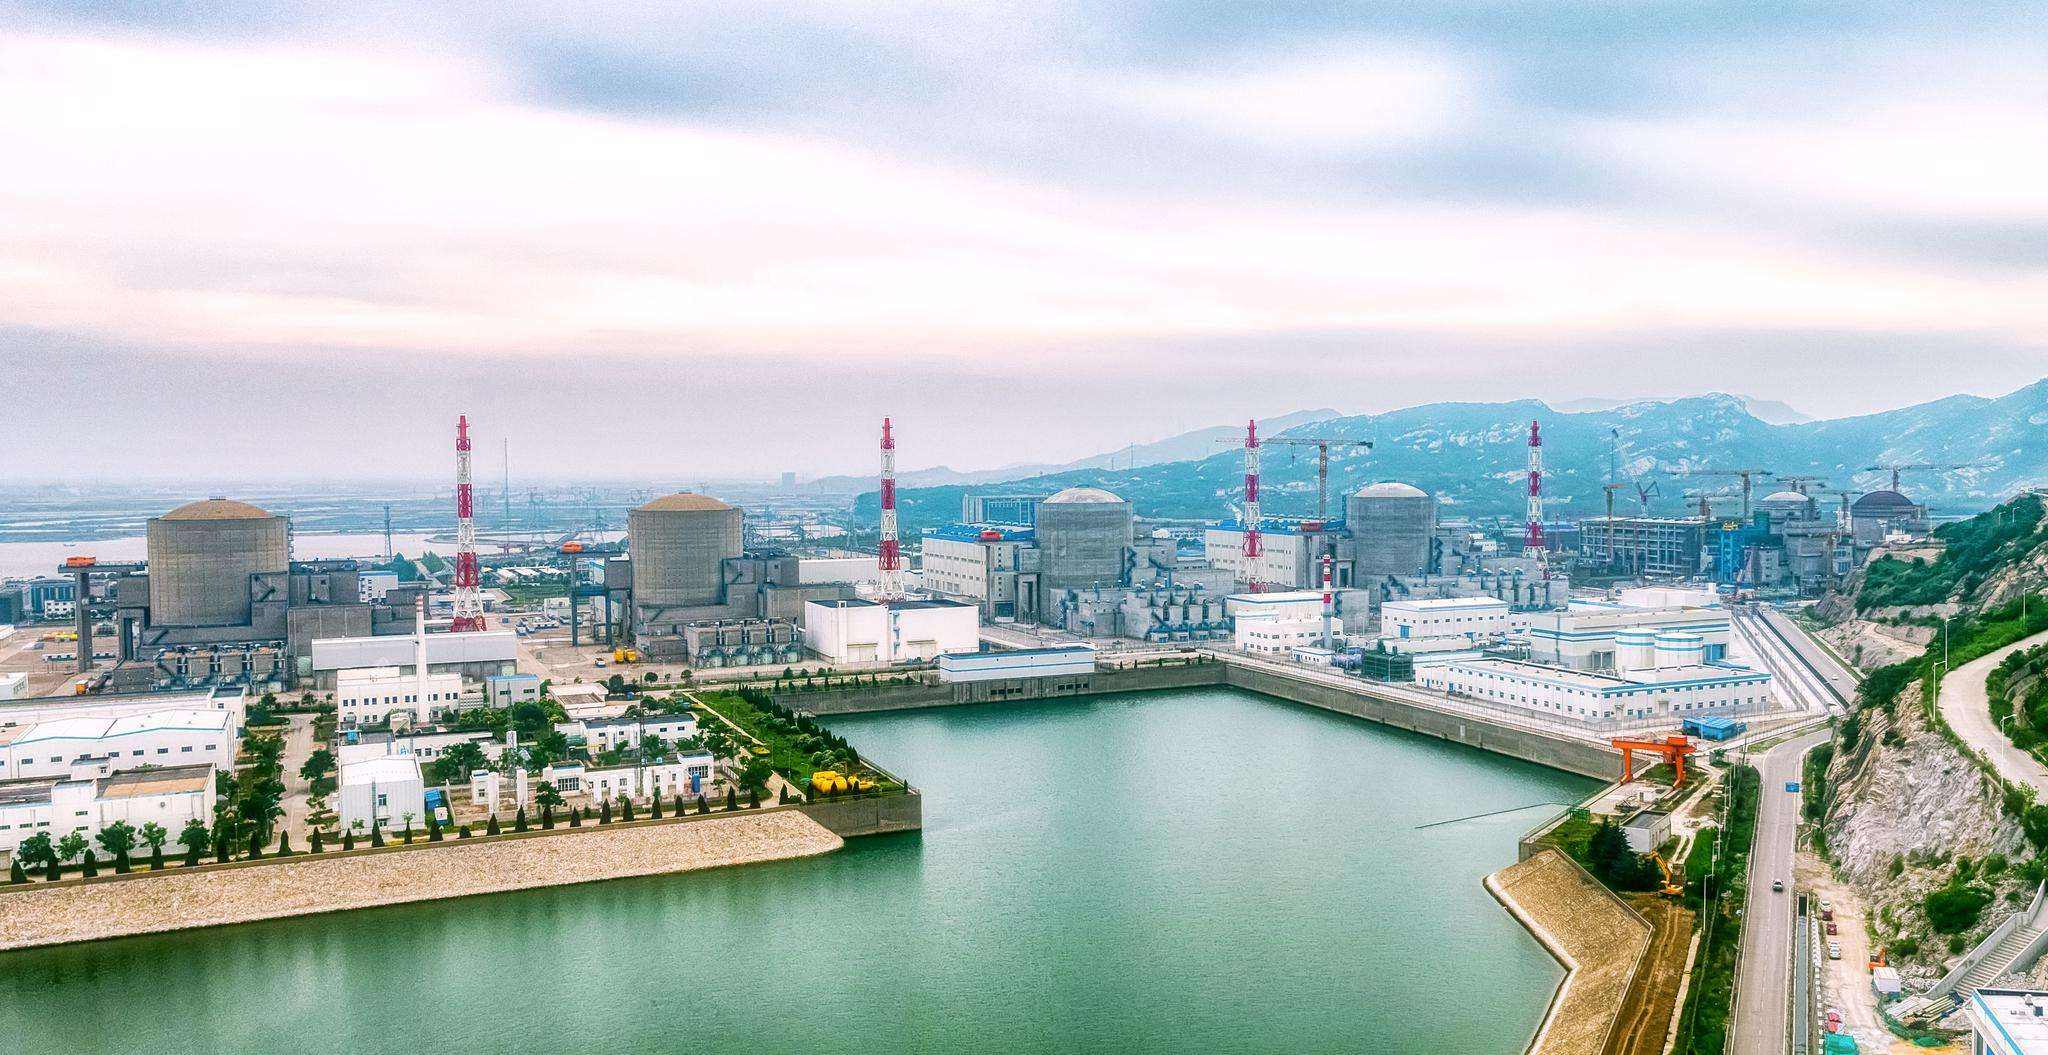 Tianwan Nuclear Power Plant in Jiangsu Province